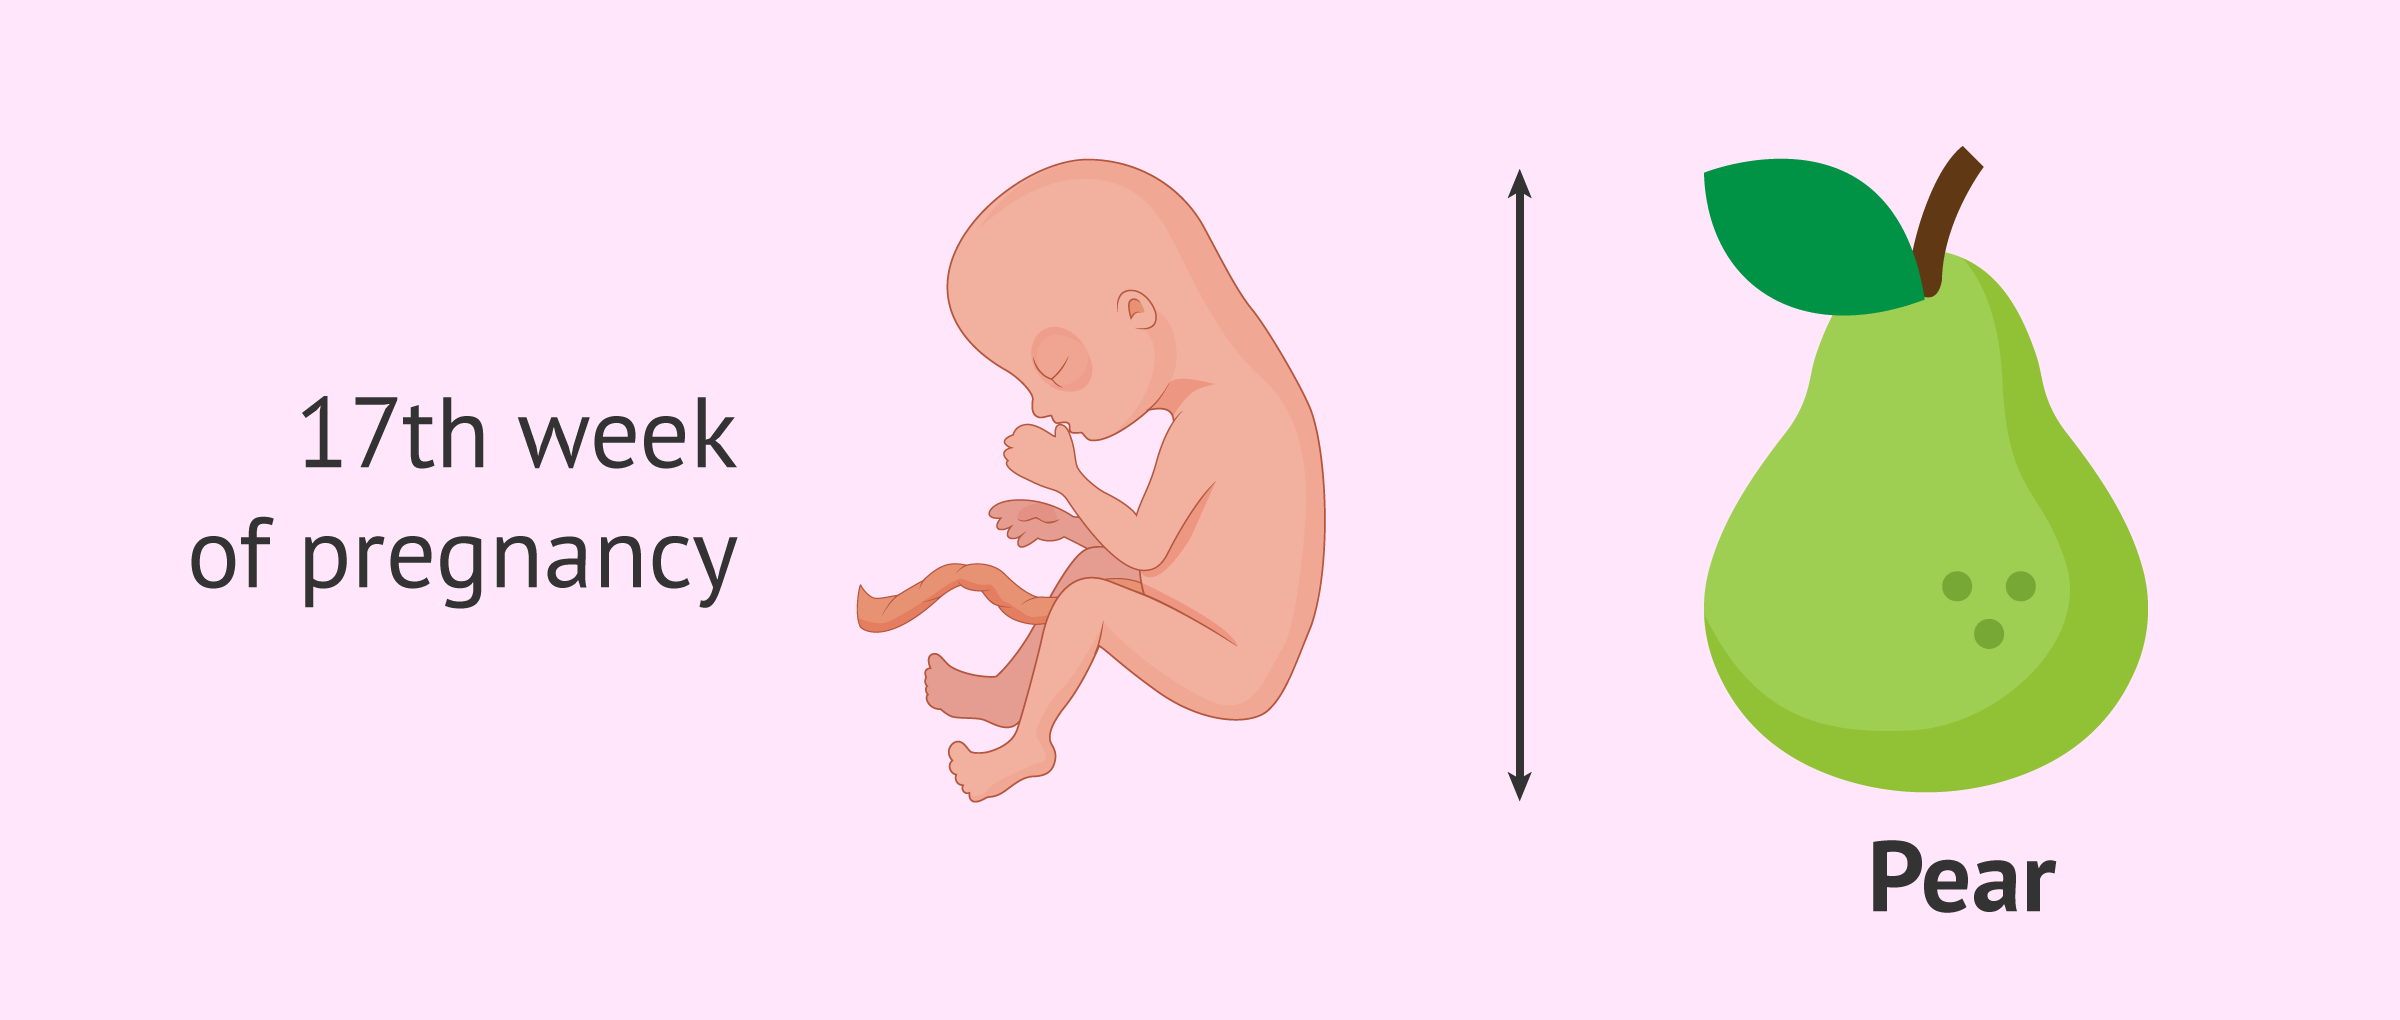 Fetus in the 17th week of pregnancy